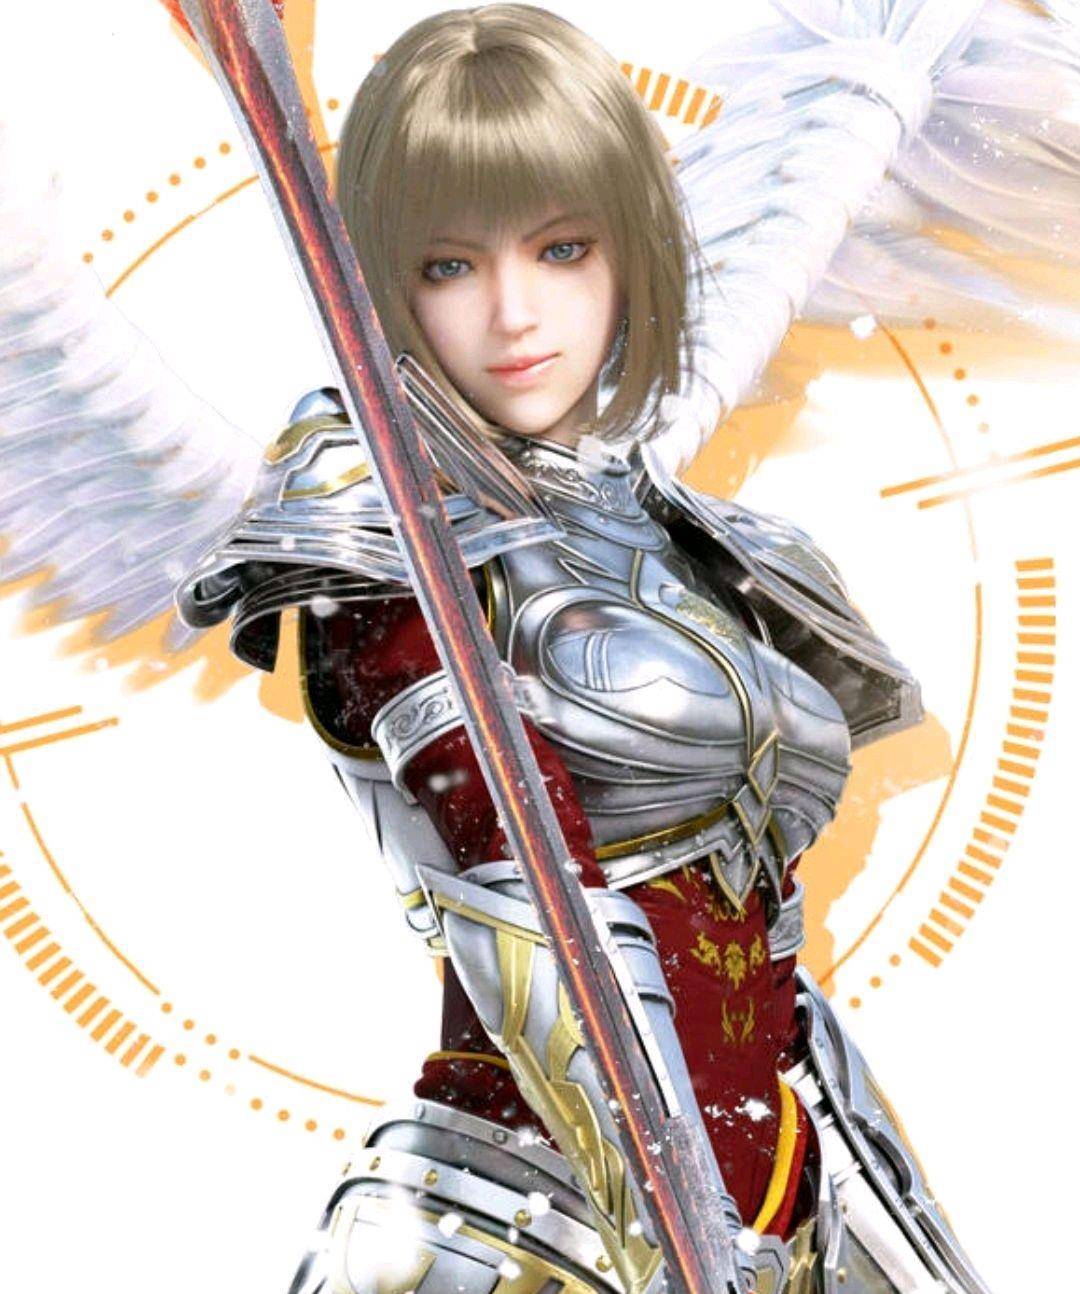 天使炙心是神圣凯莎的右翼护卫天使,也是最年轻的护卫天使,她只有500